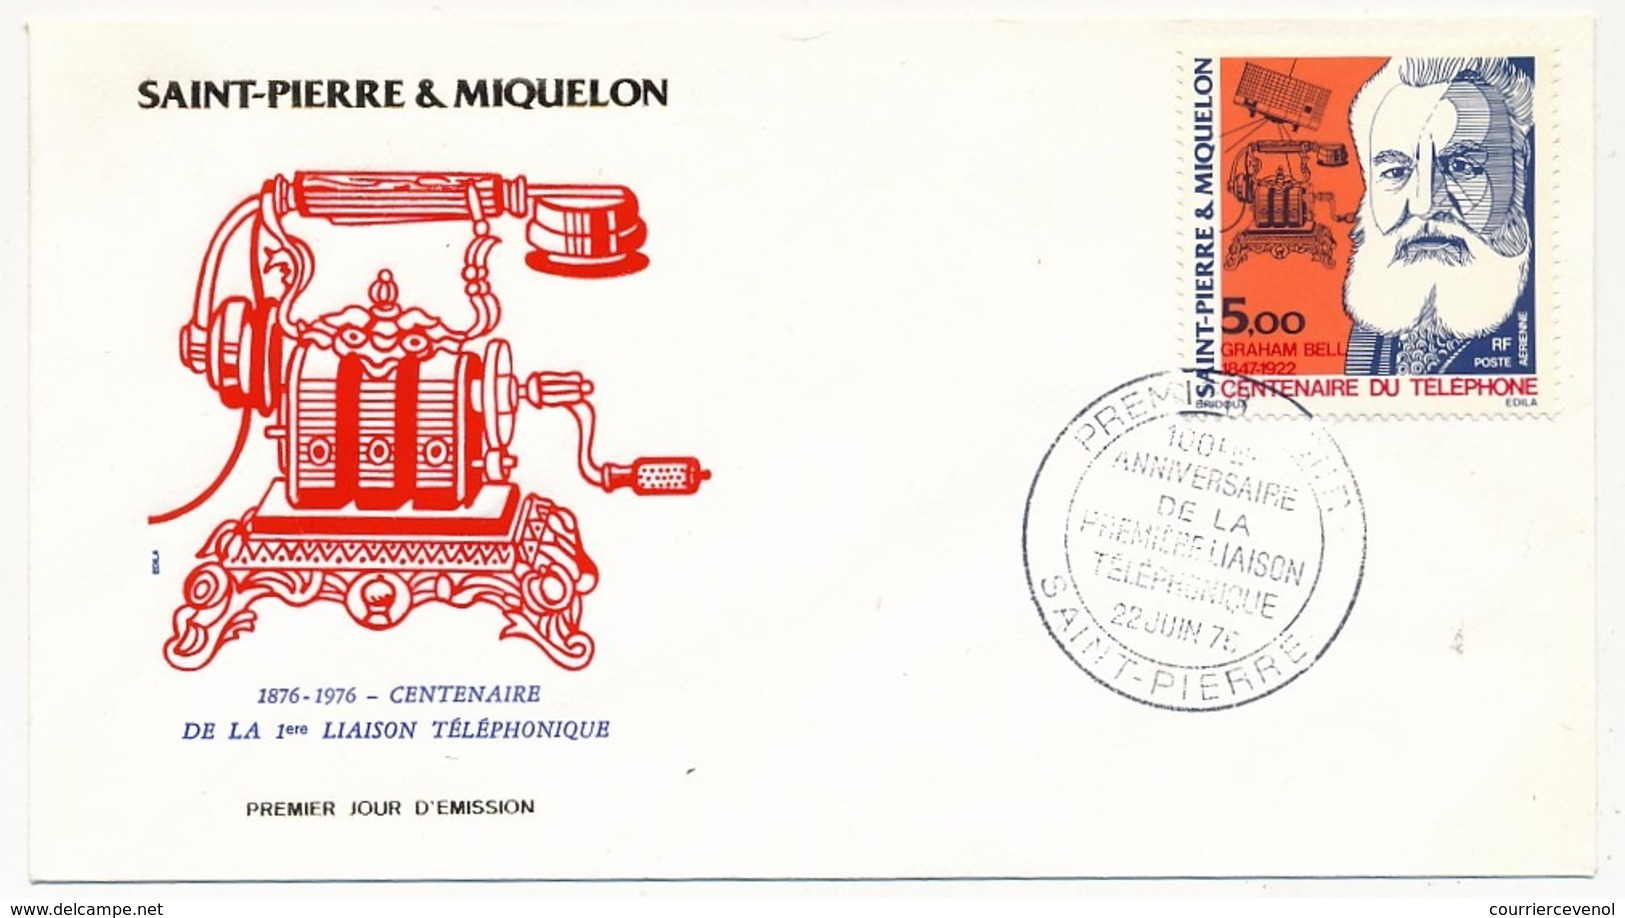 SAINT PIERRE ET MIQUELON - Enveloppe FDC - Centenaire De La Première Liaison Téléphonique - G. BELL - 1976 - Télécom